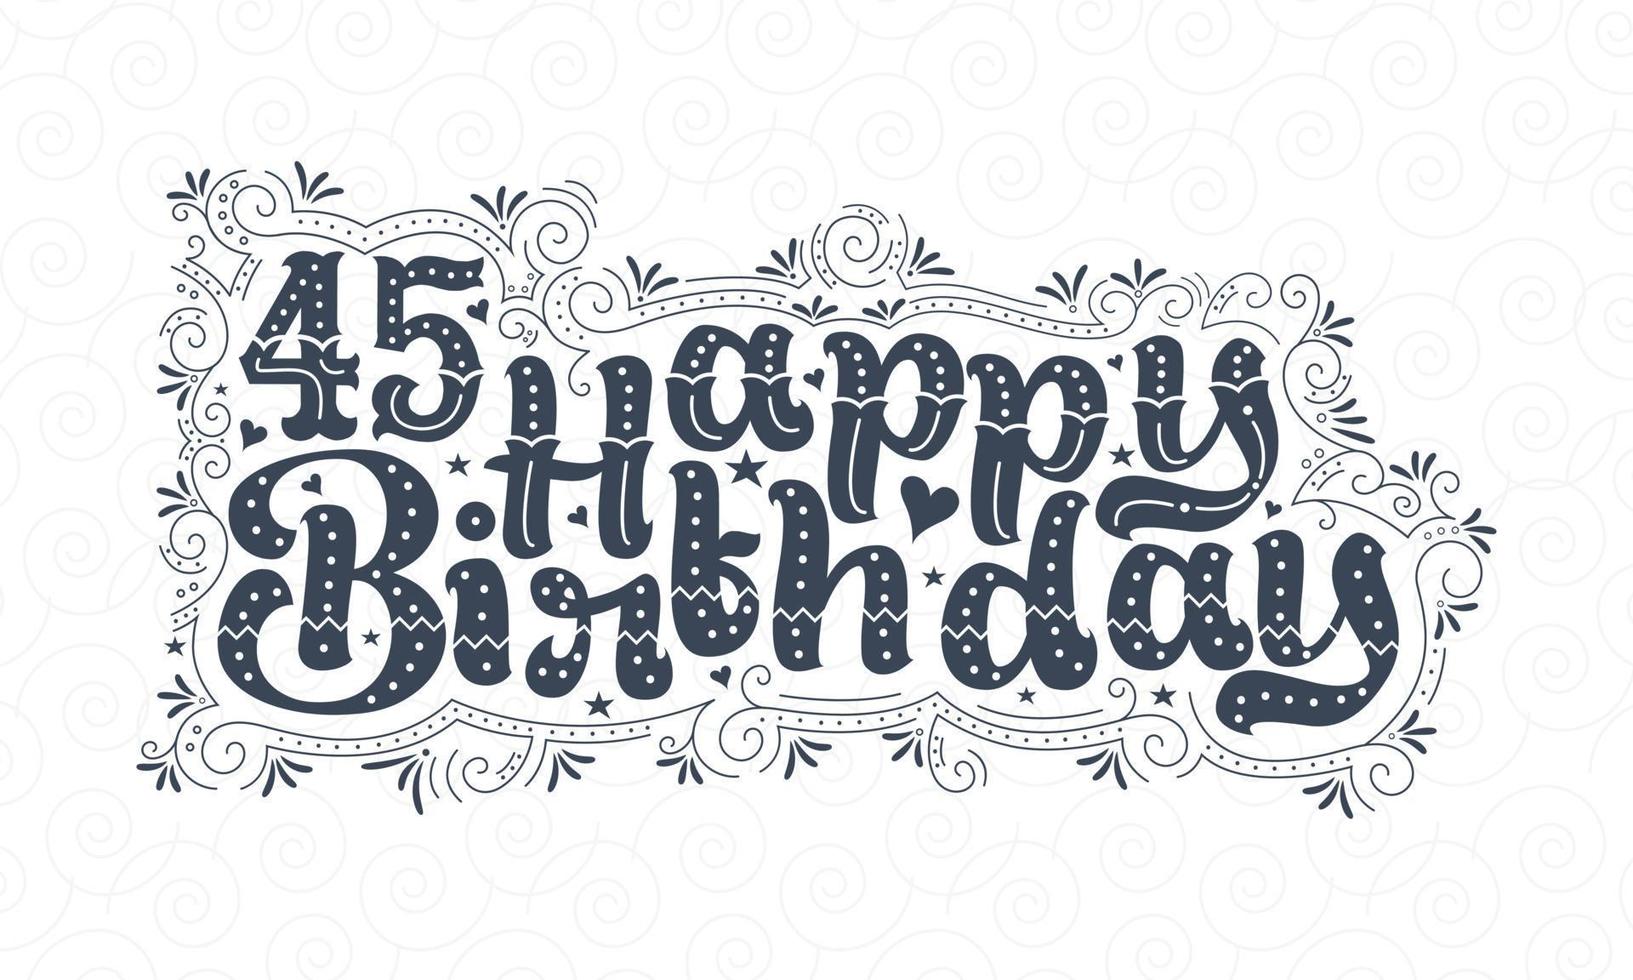 45° buon compleanno lettering, 45 anni compleanno bellissimo design tipografico con punti, linee e foglie. vettore